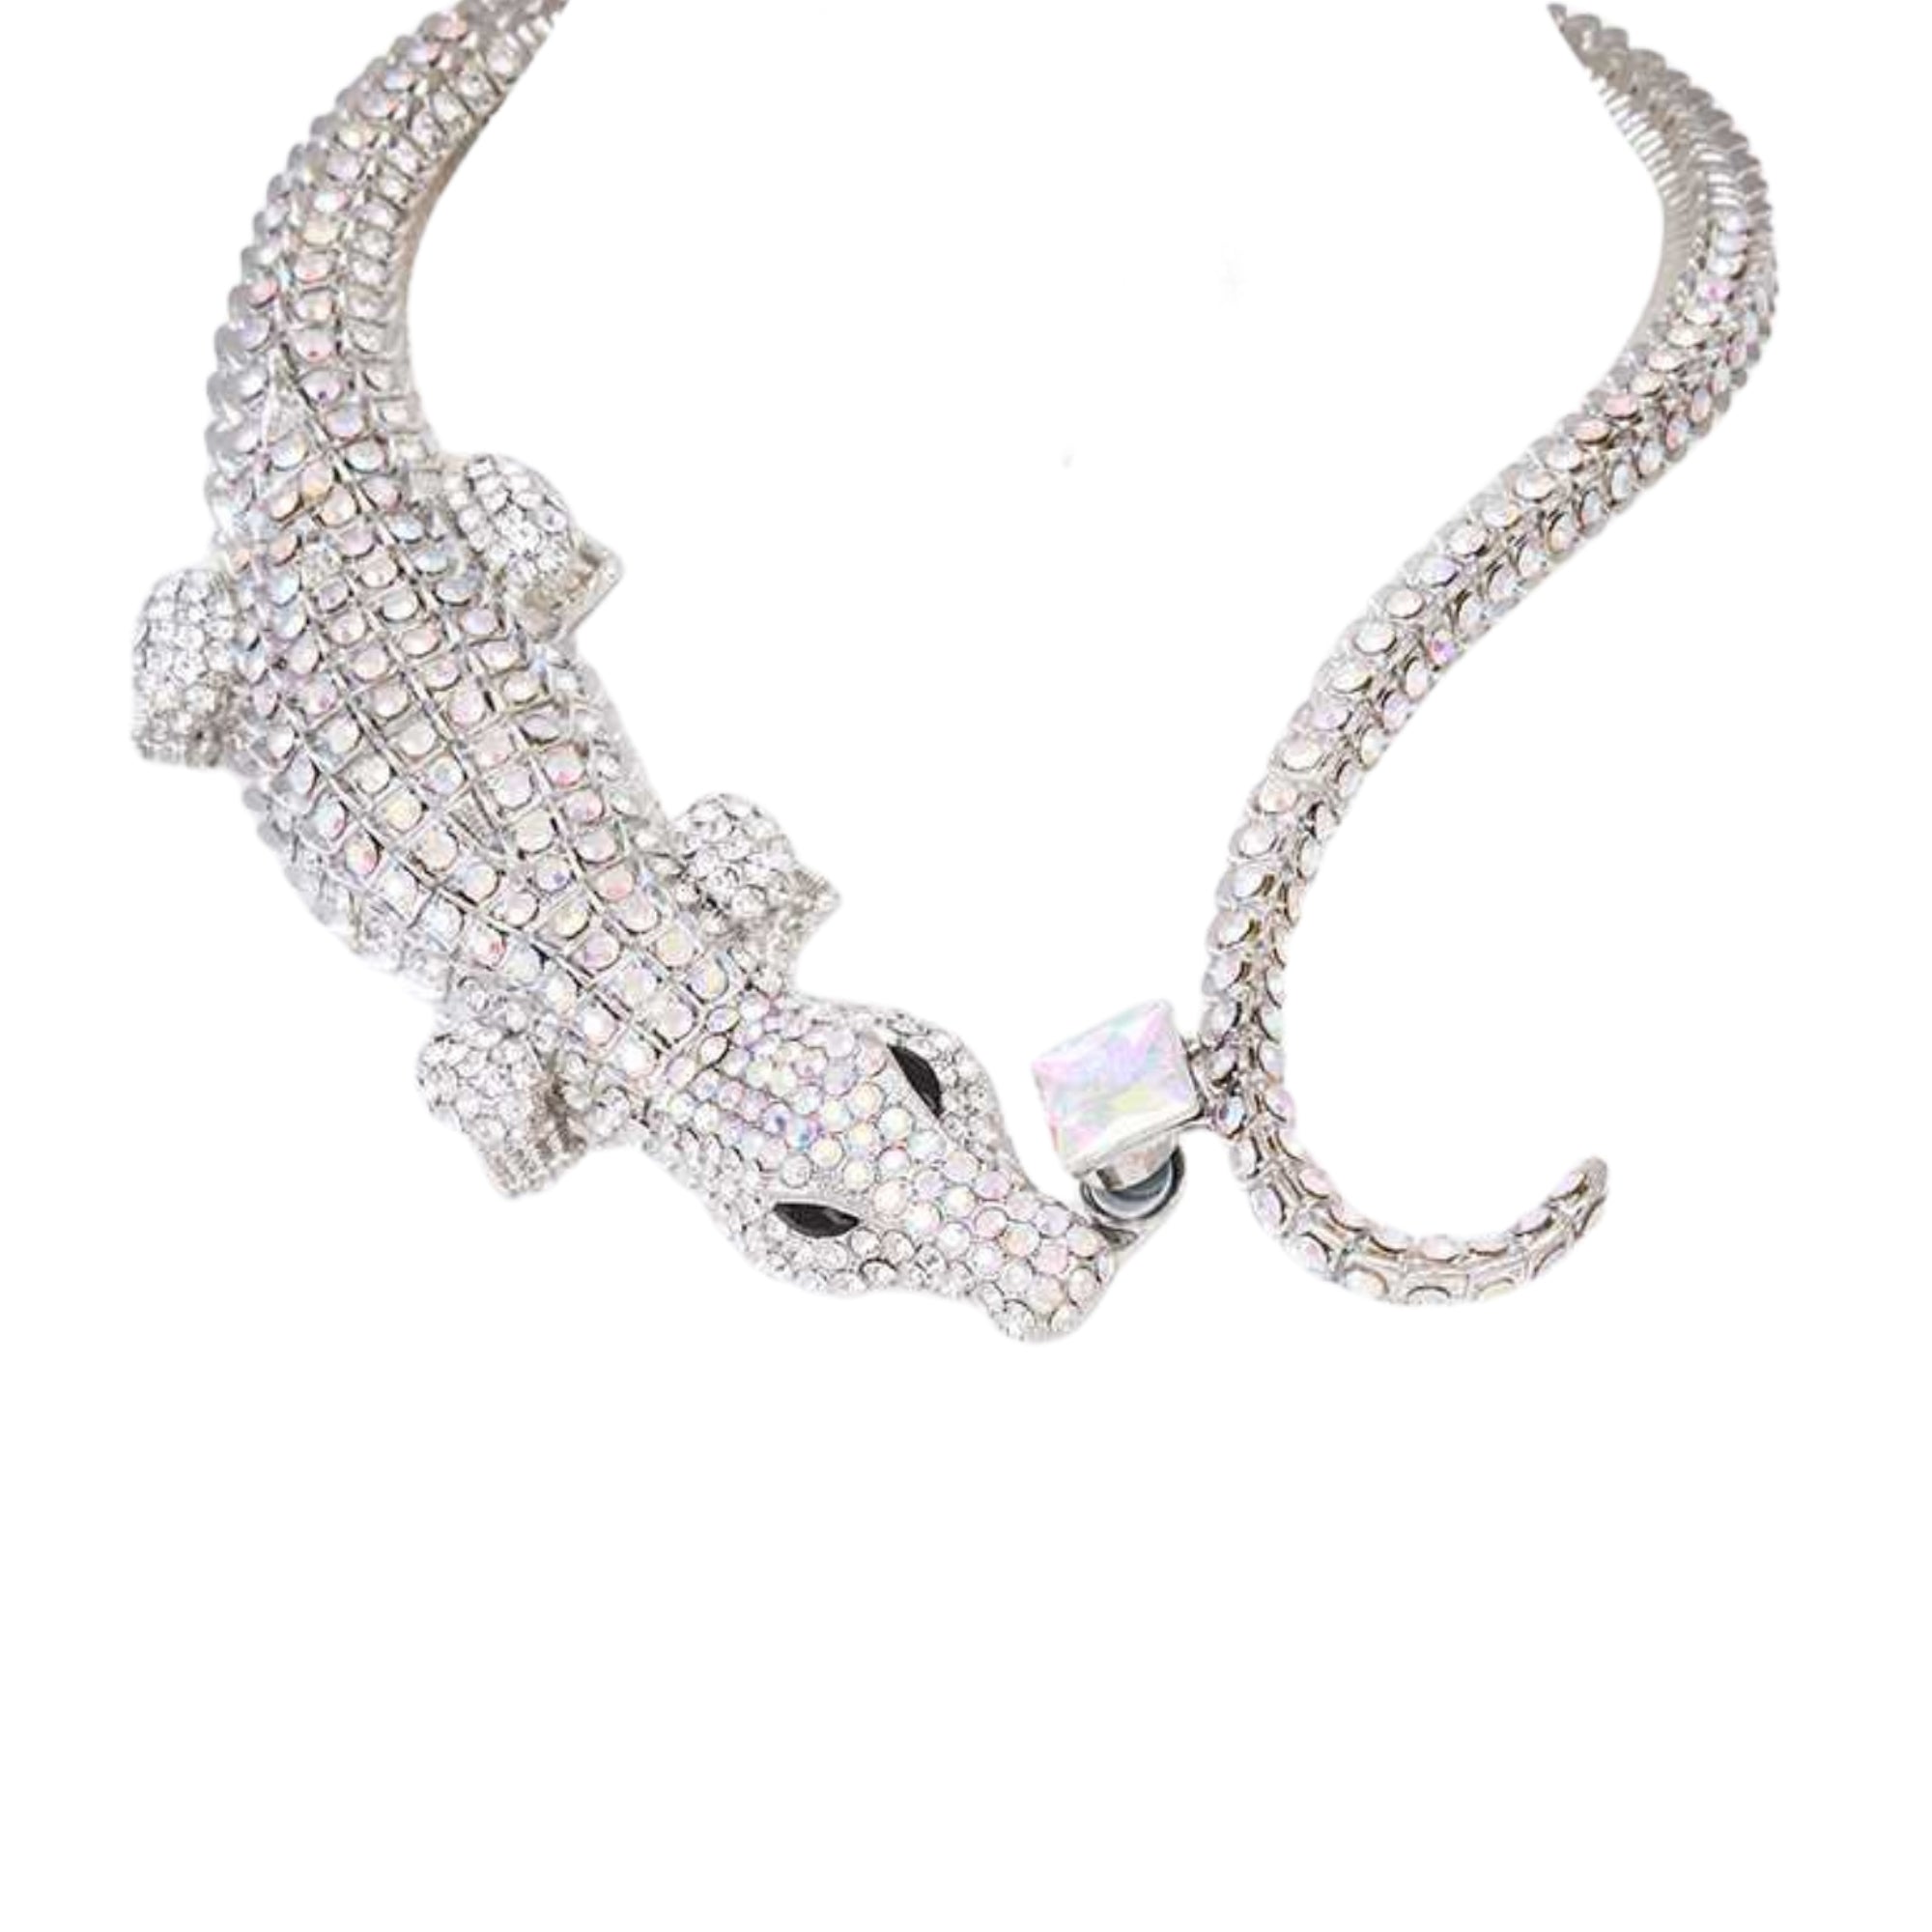 MizDragonfly Jewelry Cayman Silver Crocodile Rhinestone Necklace